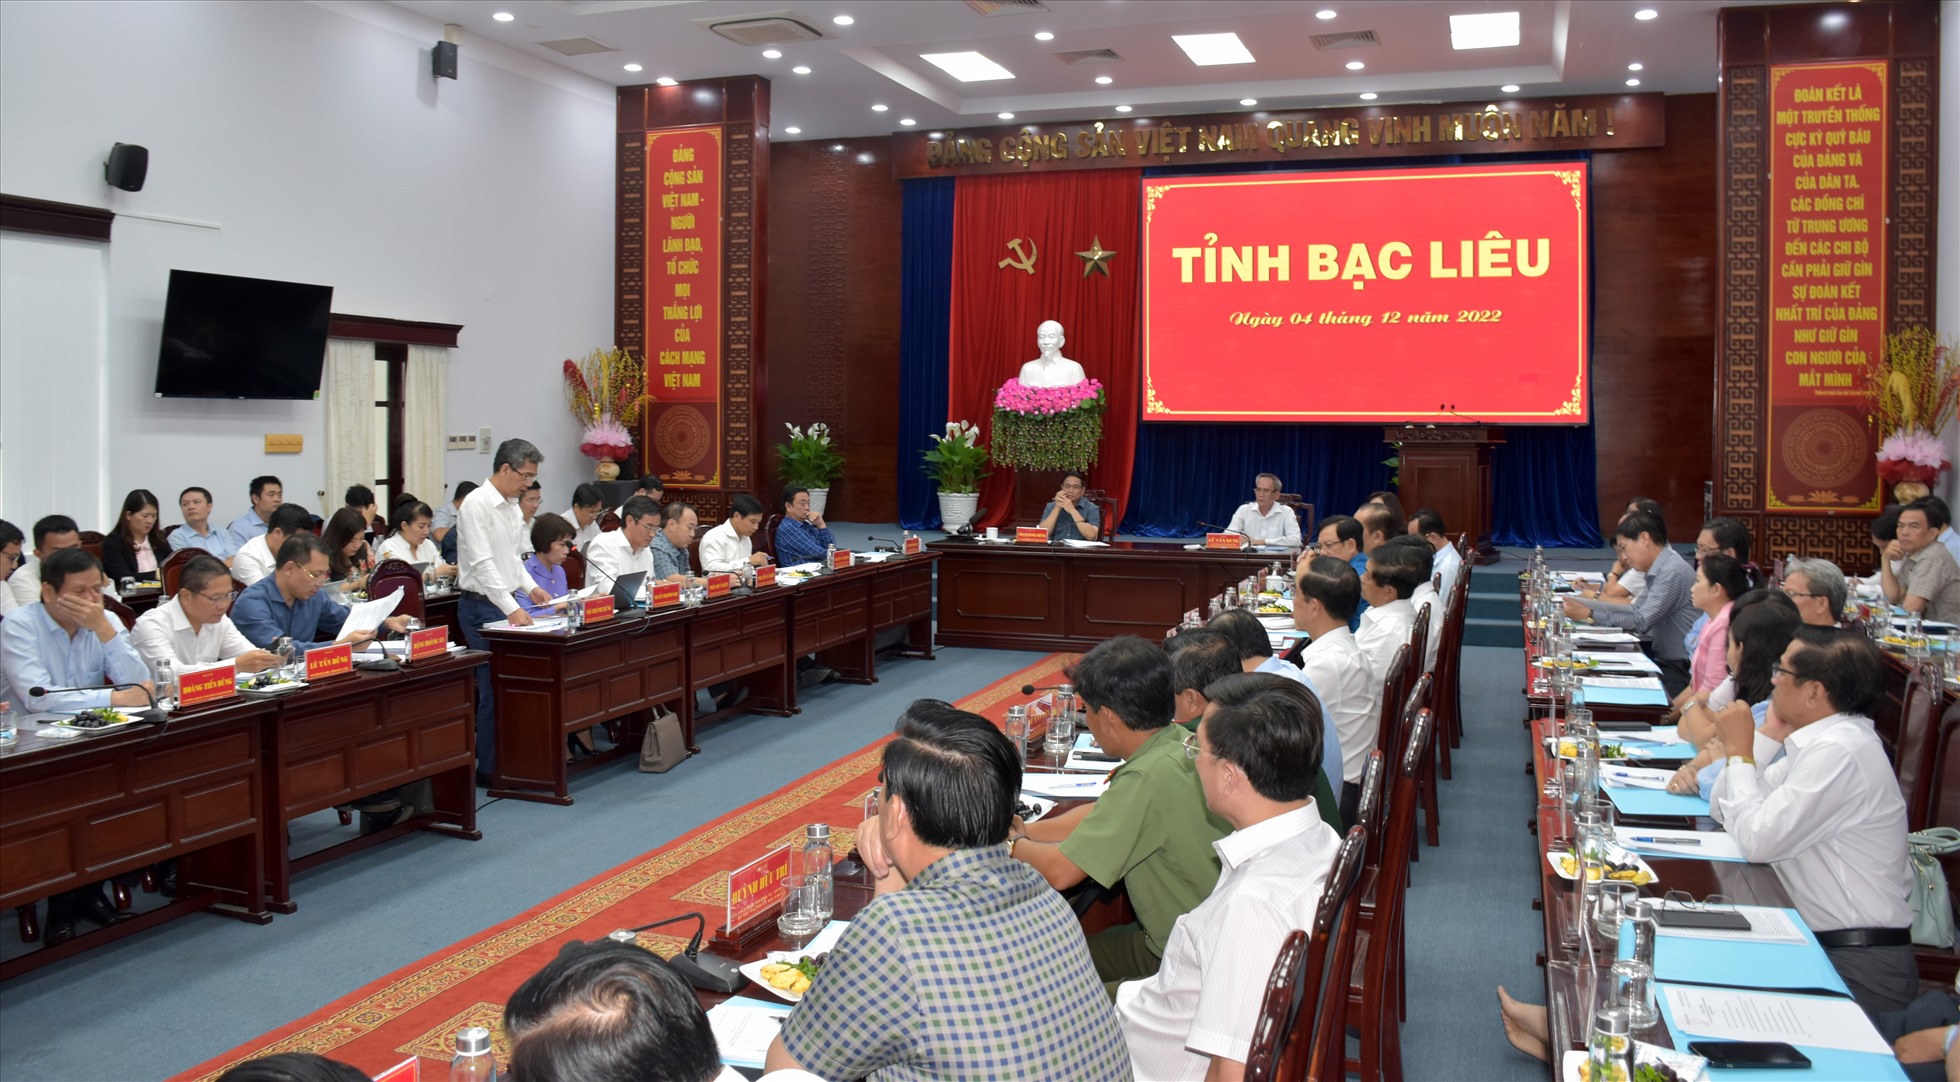 Thủ tướng Chính phủ Phạm Minh Chính cùng đoàn công tác làm việc với Ban thường vụ Tỉnh ủy Bạc Liêu. Ảnh: Nguyễn Minh